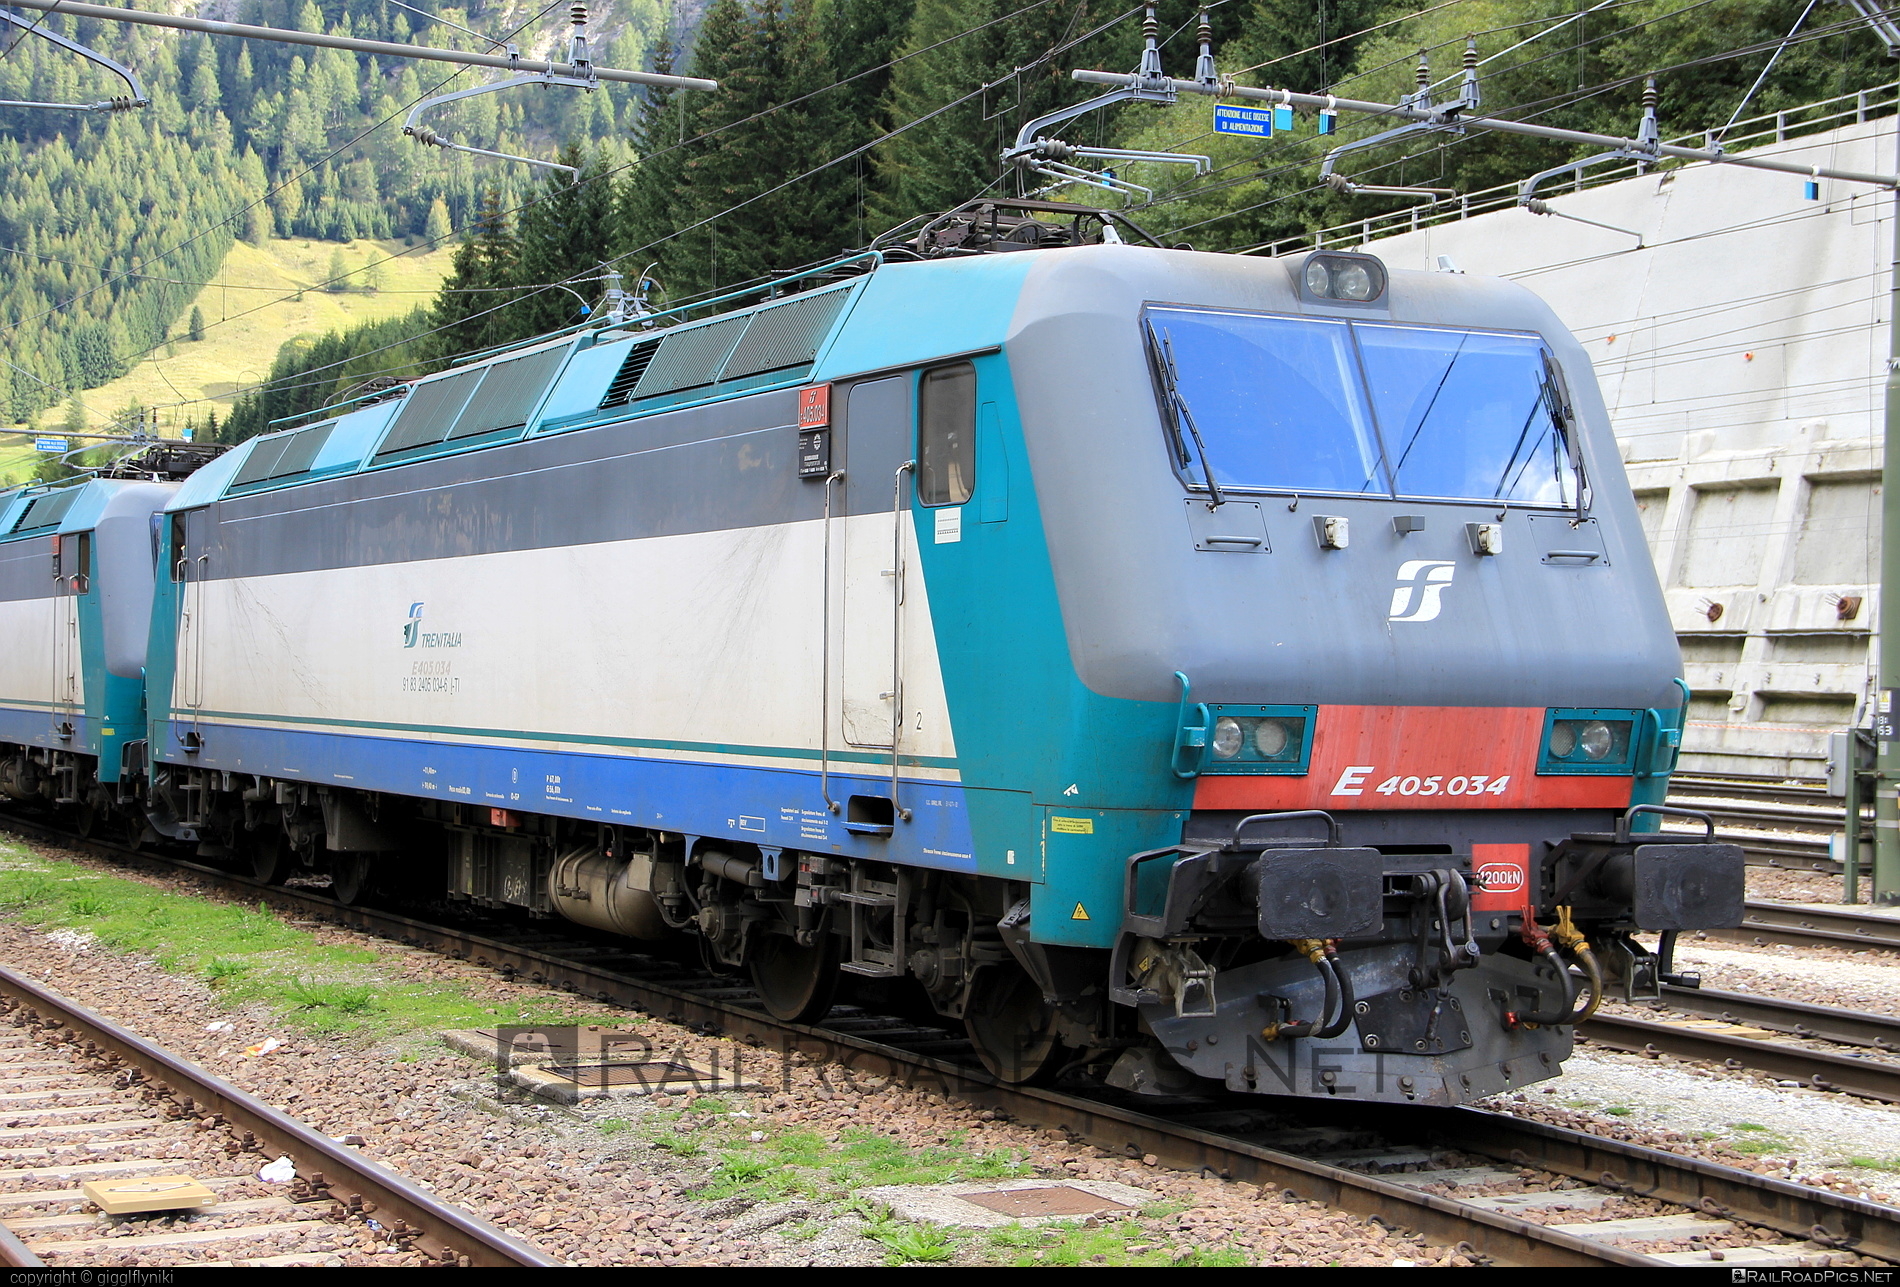 Bombardier Class E.405 - E405.034 operated by Mercitalia Rail S.r.l. #bombardier #bombardierE405 #ferroviedellostato #fs #fsClassE405 #fsitaliane #mercitalia #trenitalia #trenitaliaspa